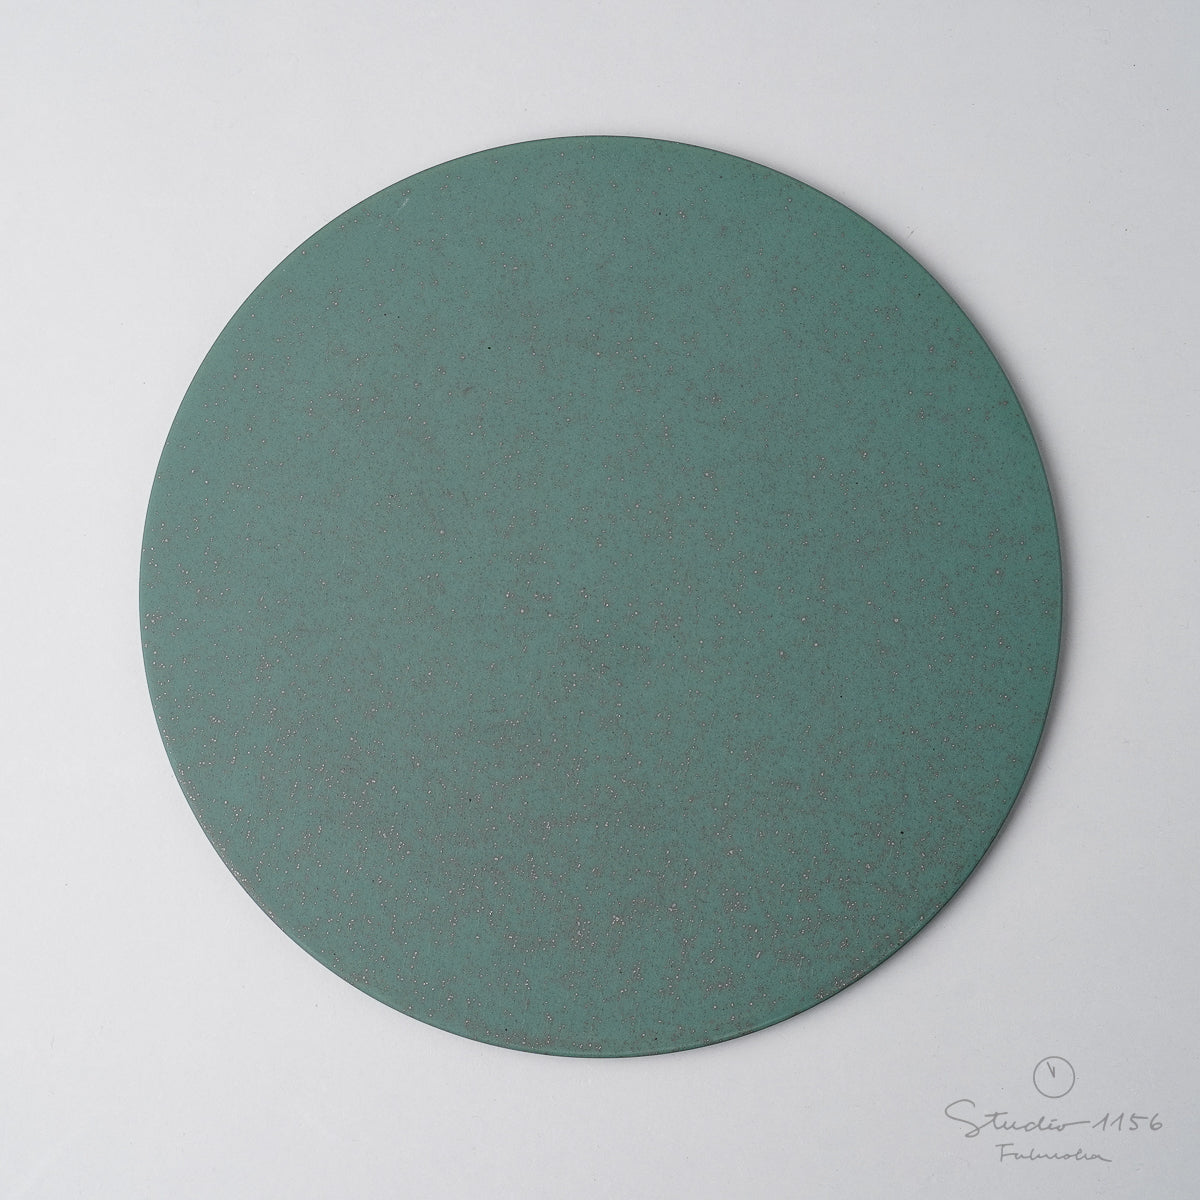 伊万里焼 極フラットプレート(L) 24.5cm 緑斑紋 Hataman Studio1156